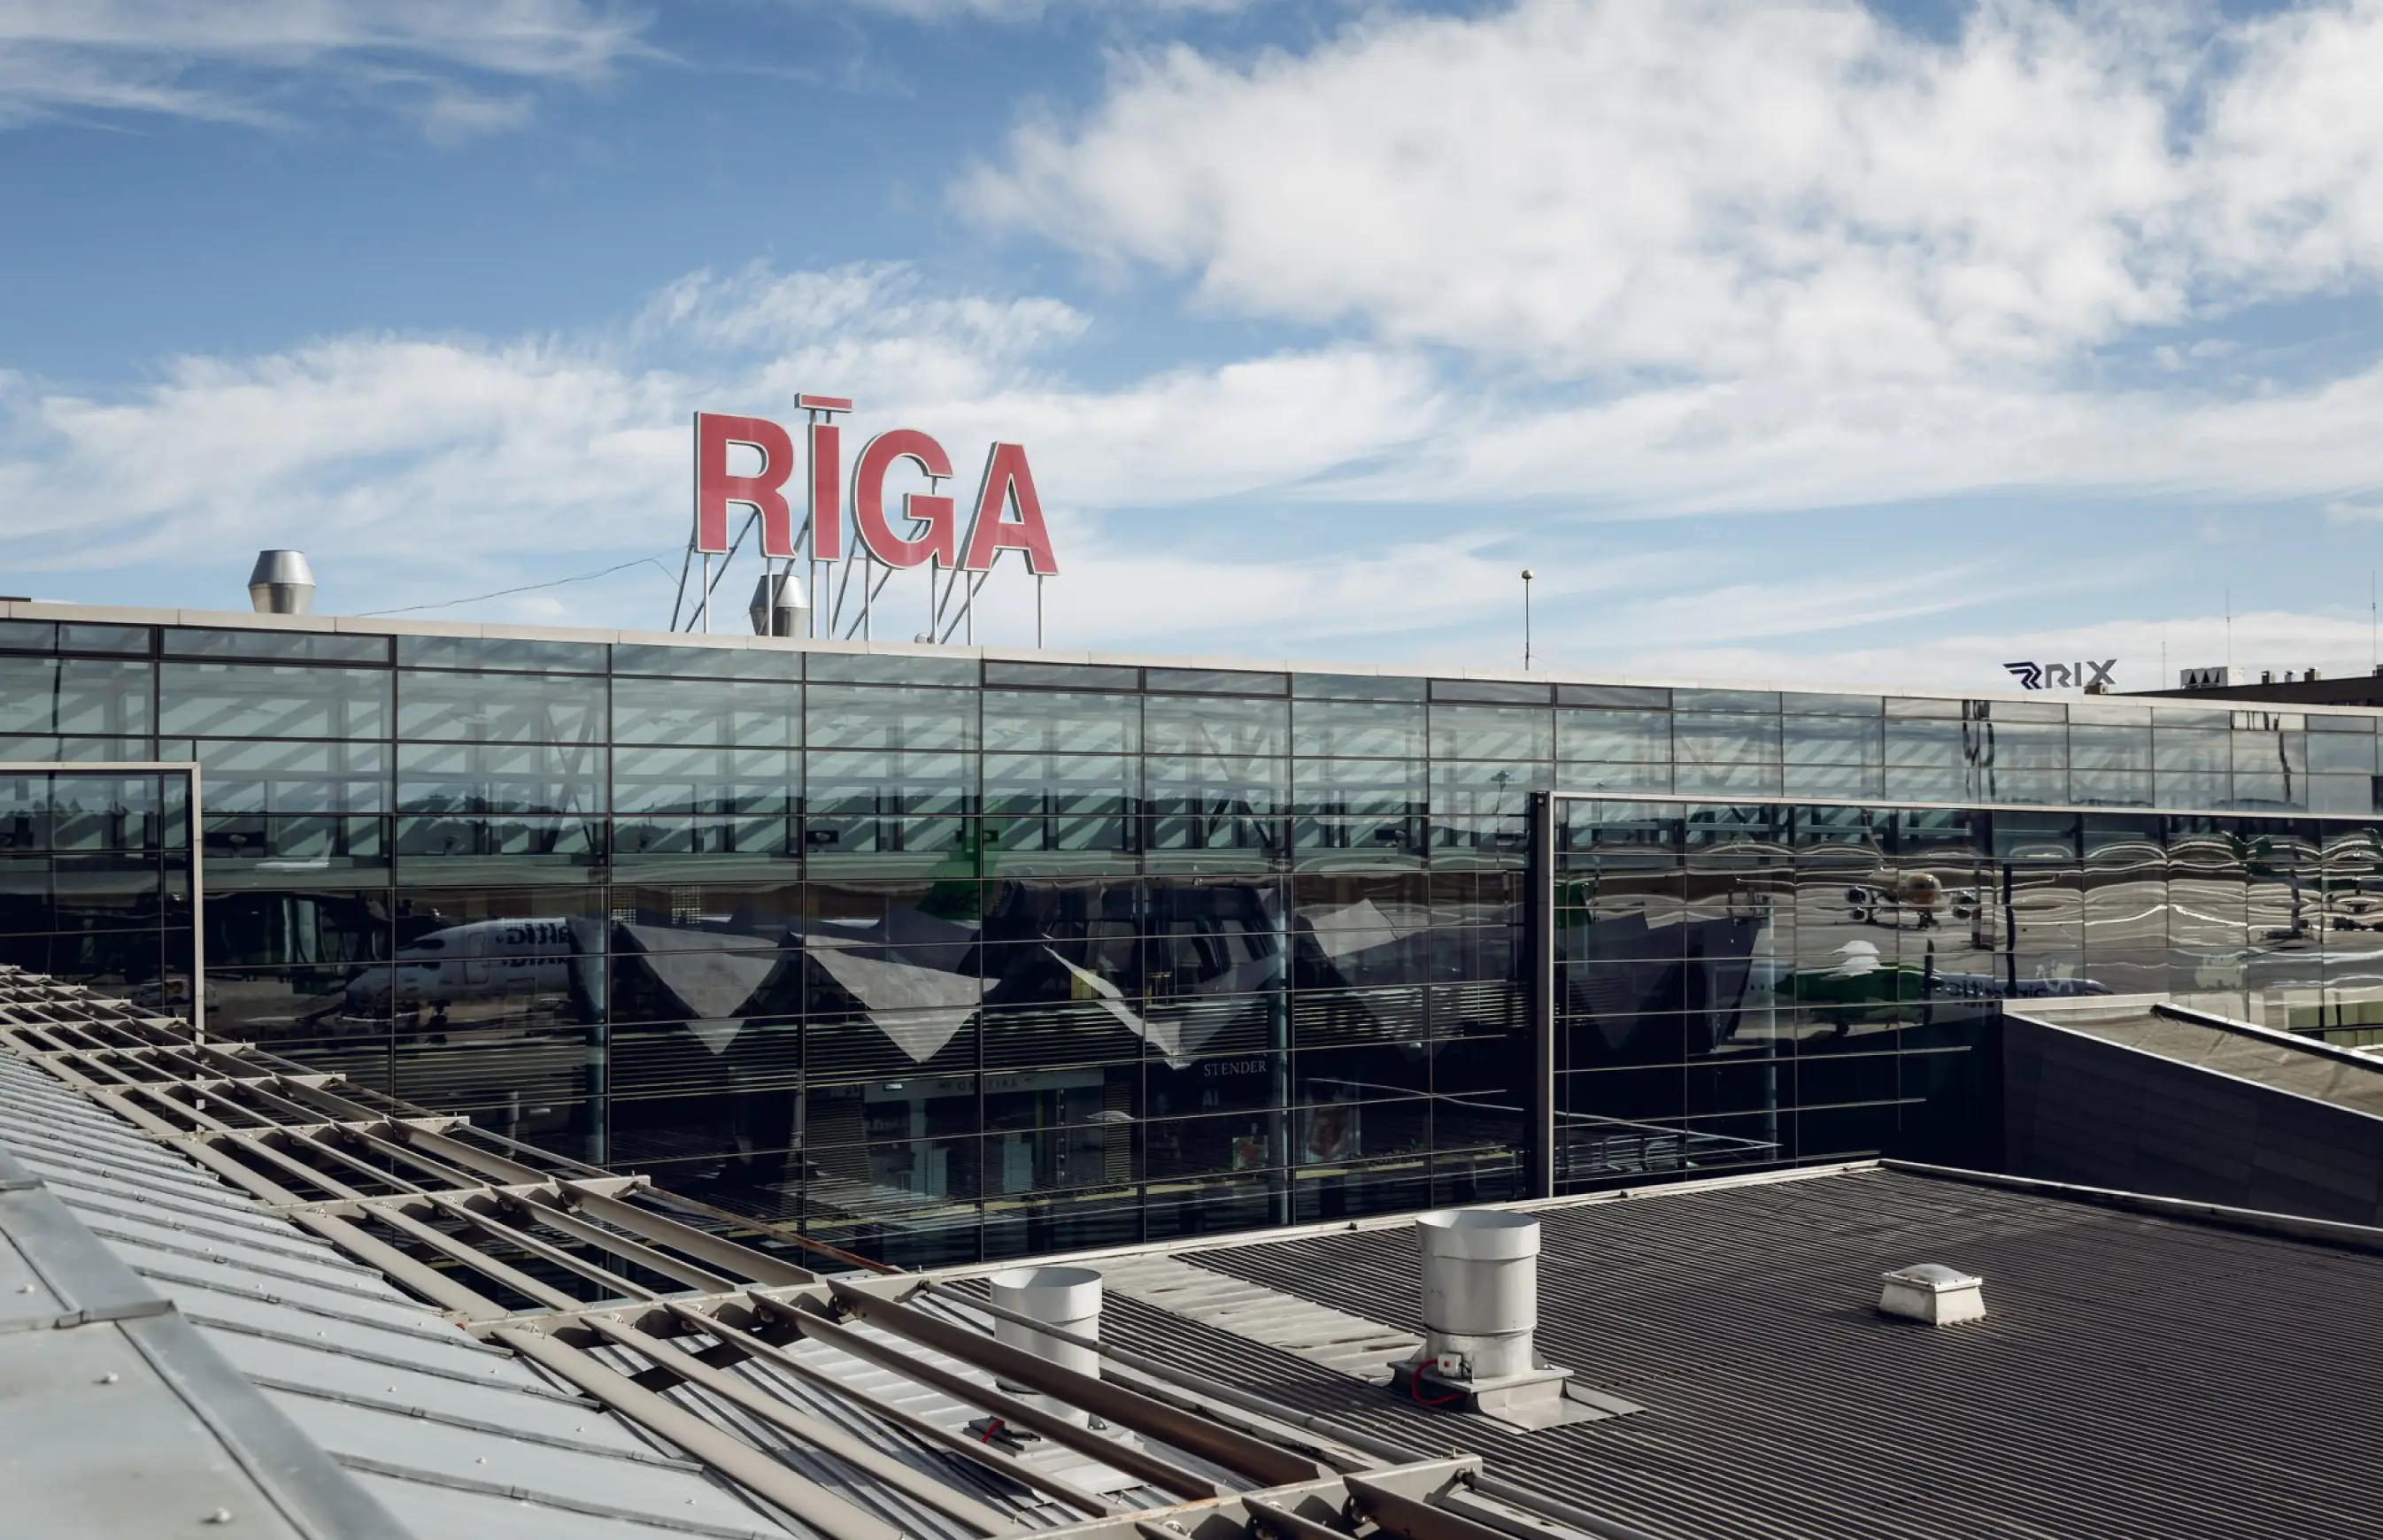 Рижские аэропорты: Спилве, Румбула, Рига